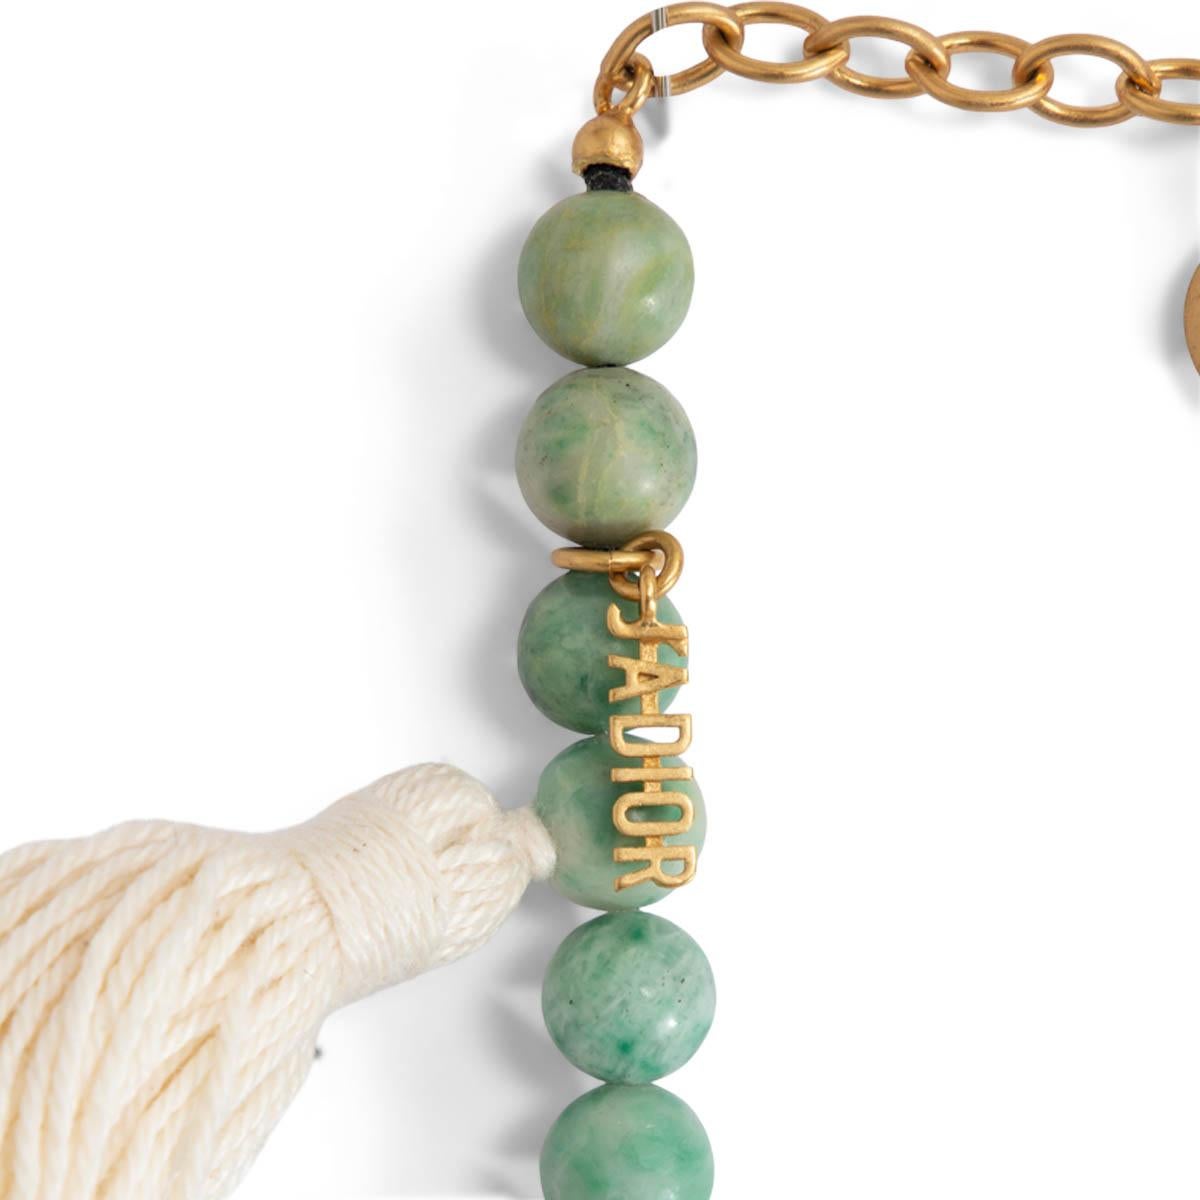 100% authentique bracelet double enveloppe Christian Dior Garden en perles de jaspe. Peut également être porté en tant que tour de cou. Comprend des charmes en or et un pompon blanc. A été porté et est en excellent état.

Length40cm (15.6in)

Toutes